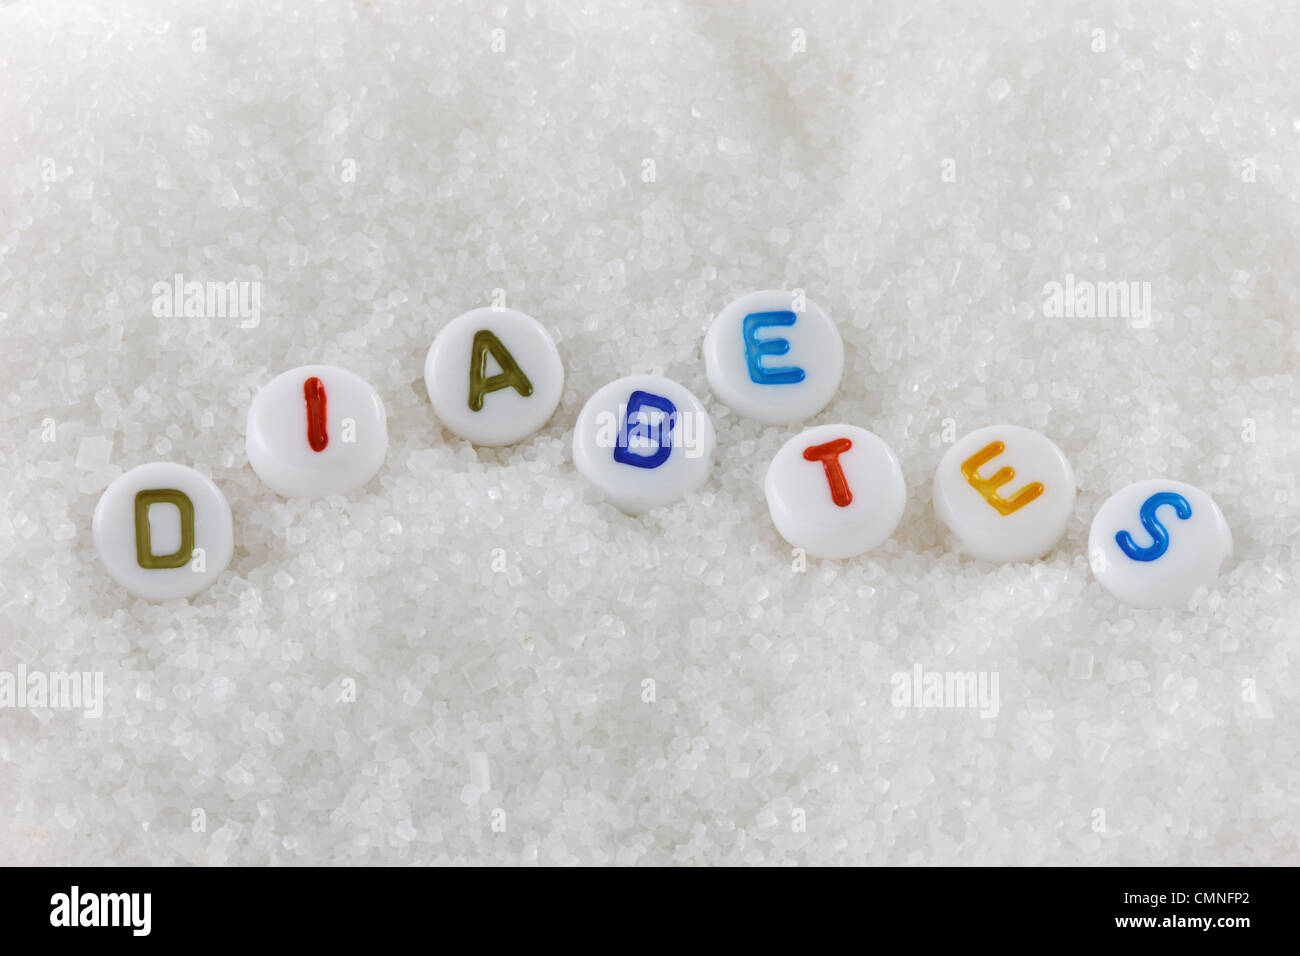 La palabra Diabetes en alfabeto cordones de azúcar Foto de stock